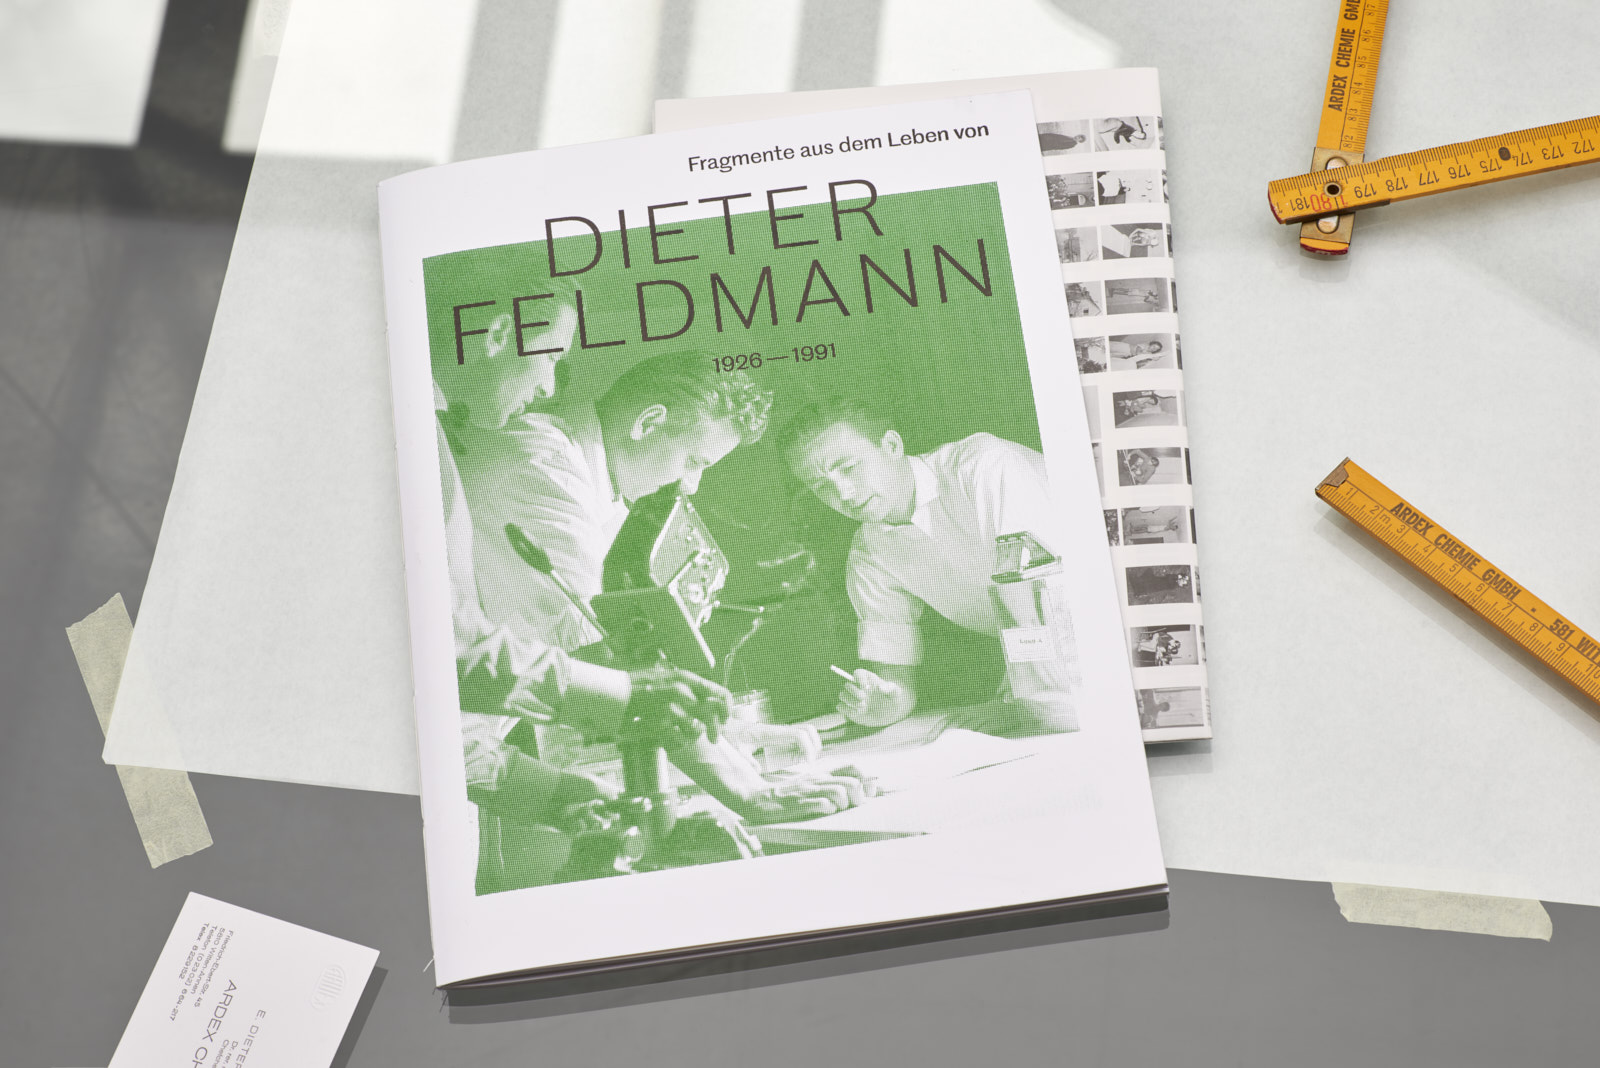 Dieter Feldmann